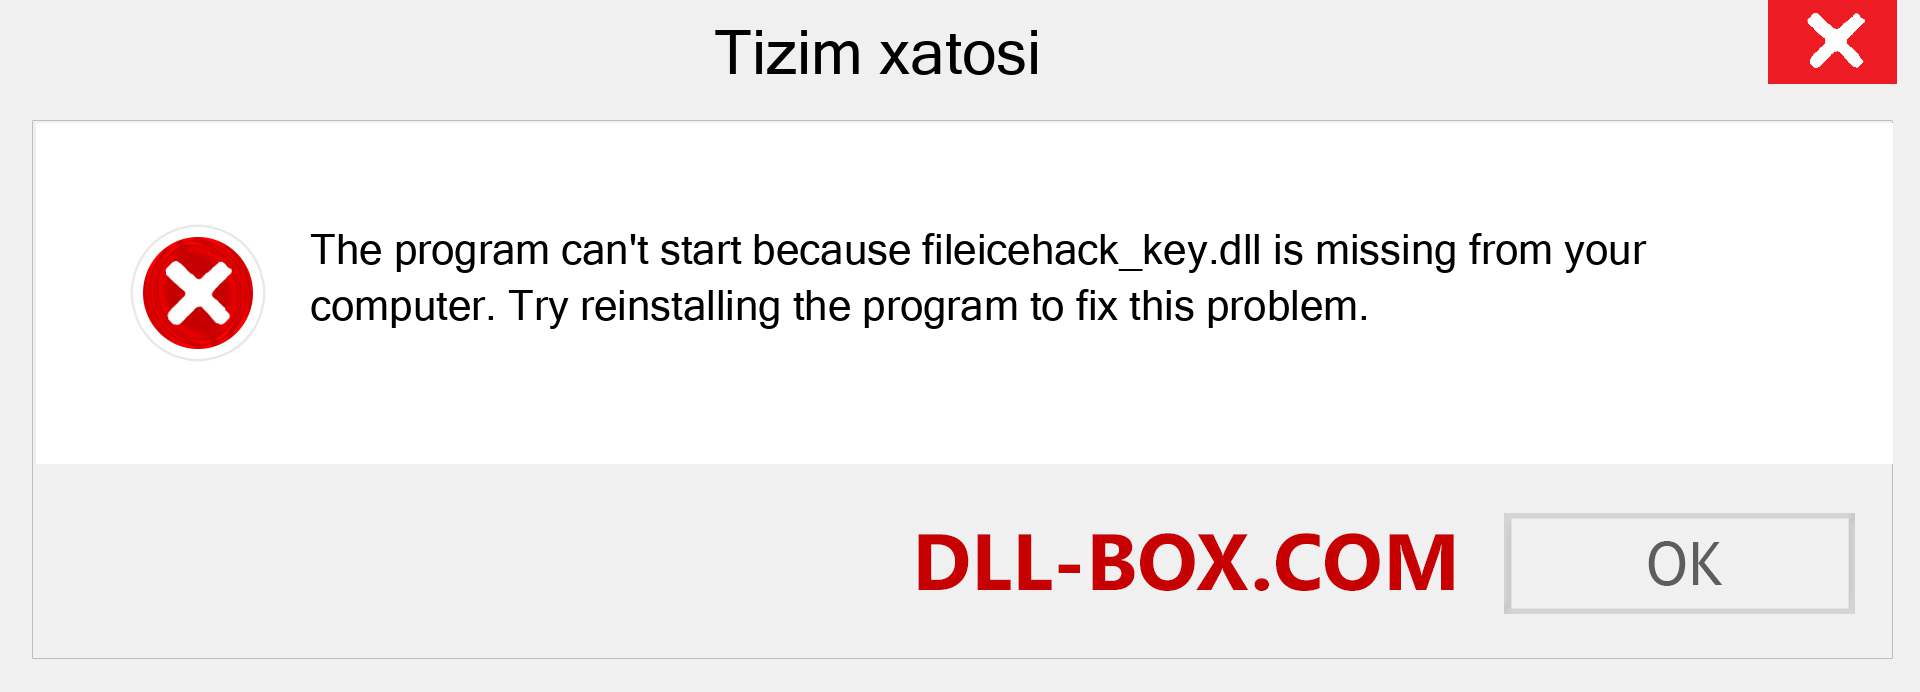 fileicehack_key.dll fayli yo'qolganmi?. Windows 7, 8, 10 uchun yuklab olish - Windowsda fileicehack_key dll etishmayotgan xatoni tuzating, rasmlar, rasmlar